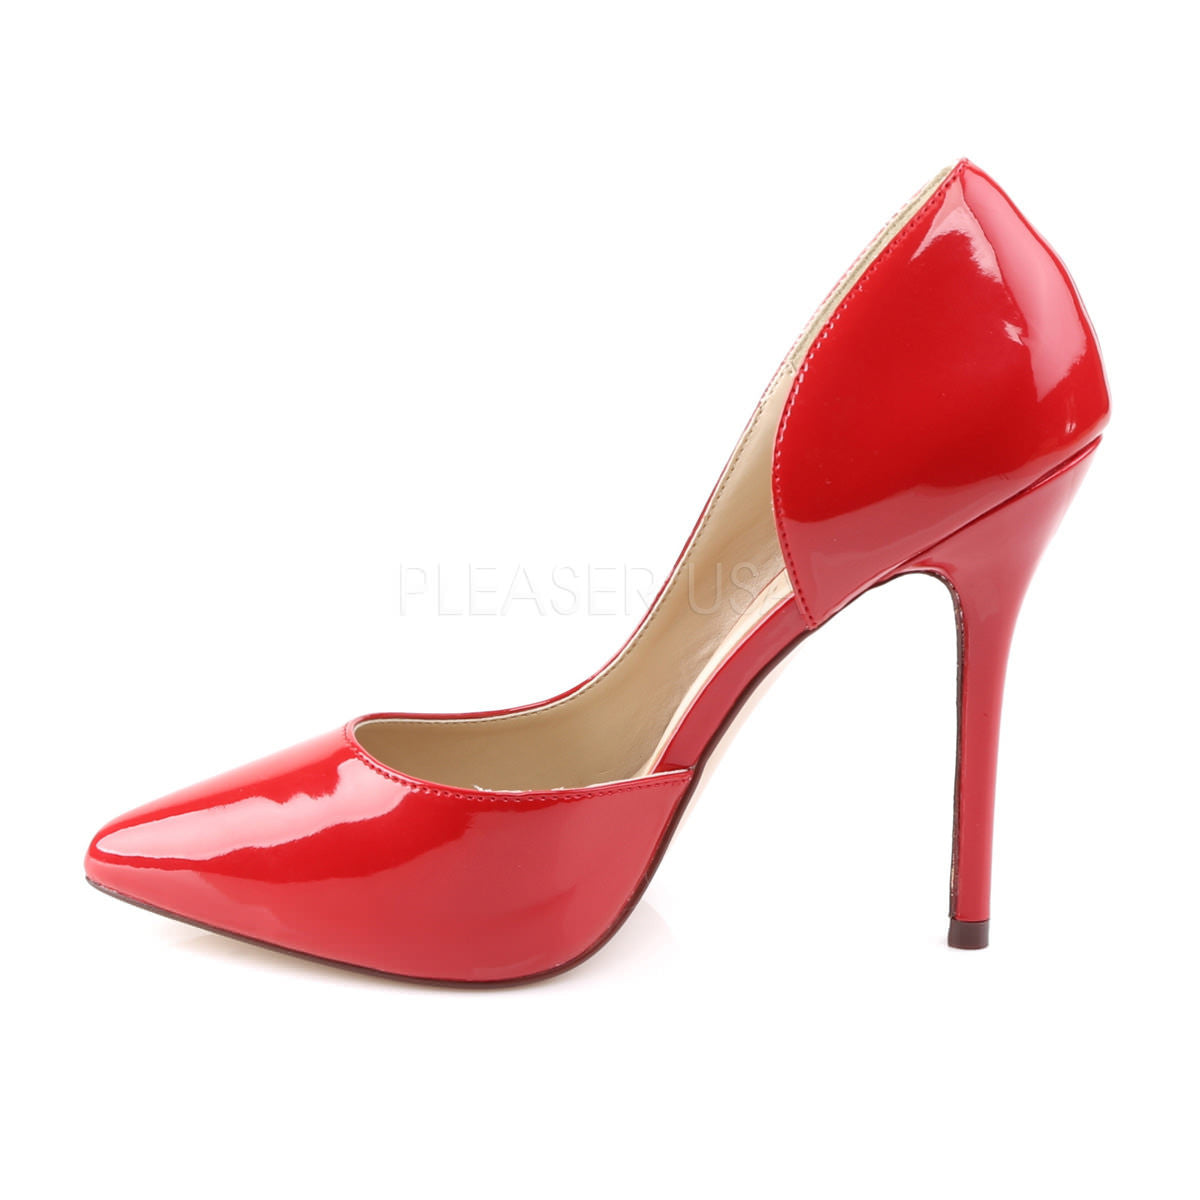 Pleaser AMUSE-22 Red Patent D'Orsay Pumps - Shoecup.com - 3